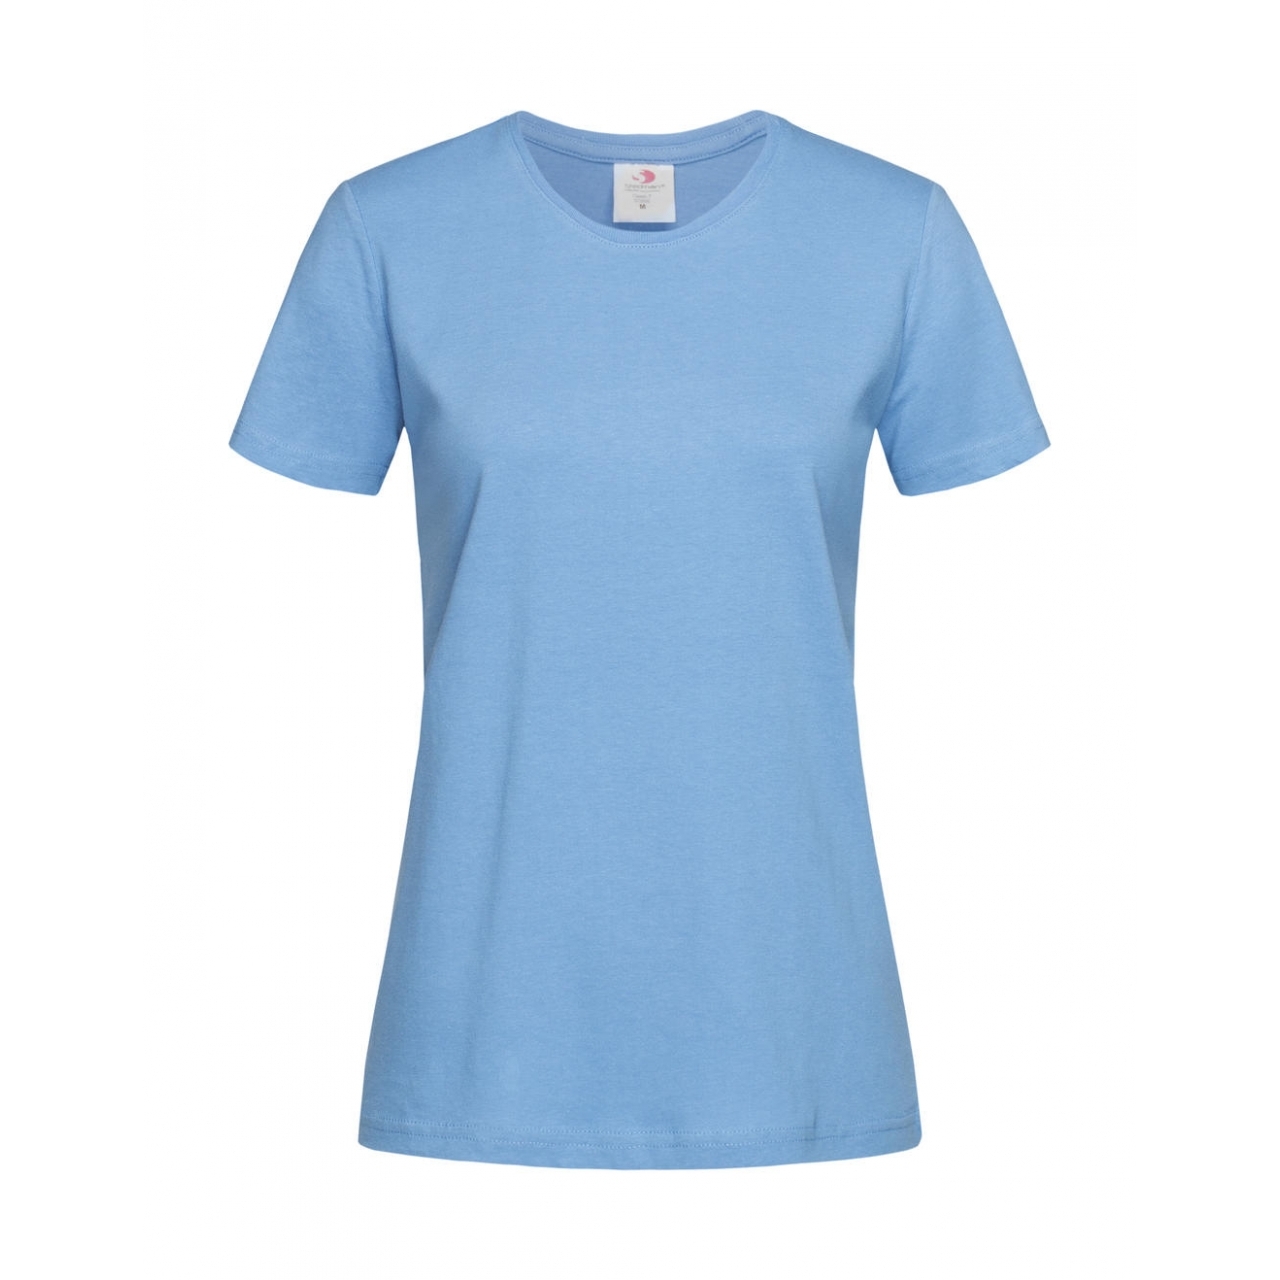 Tričko dámské Stedman Fitted s kulatým výstřihem - světle modré, XS